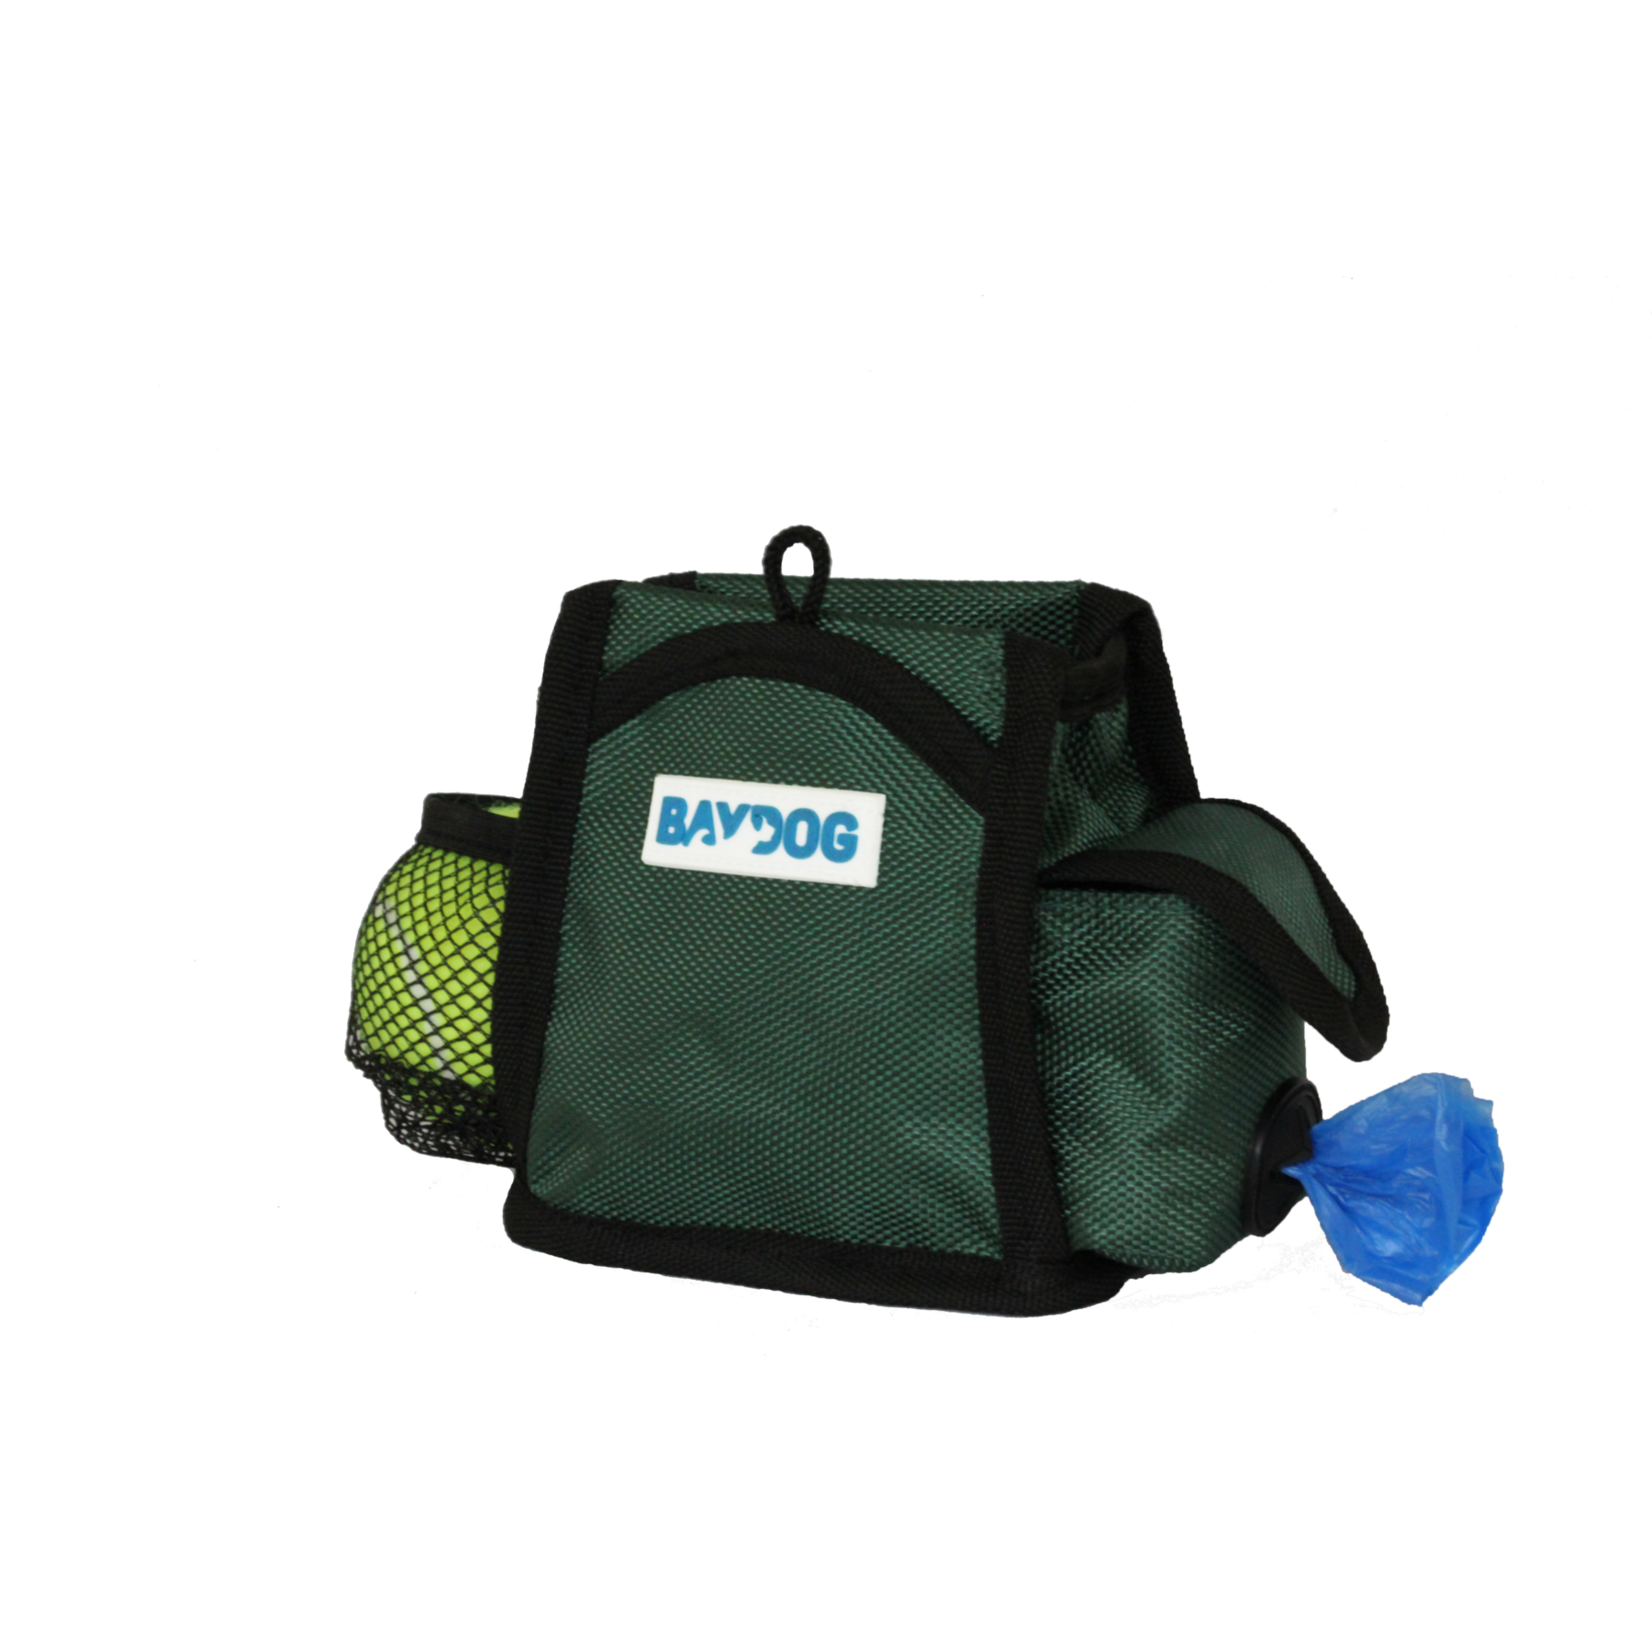 BAYDOG Pack-N-Go Bag